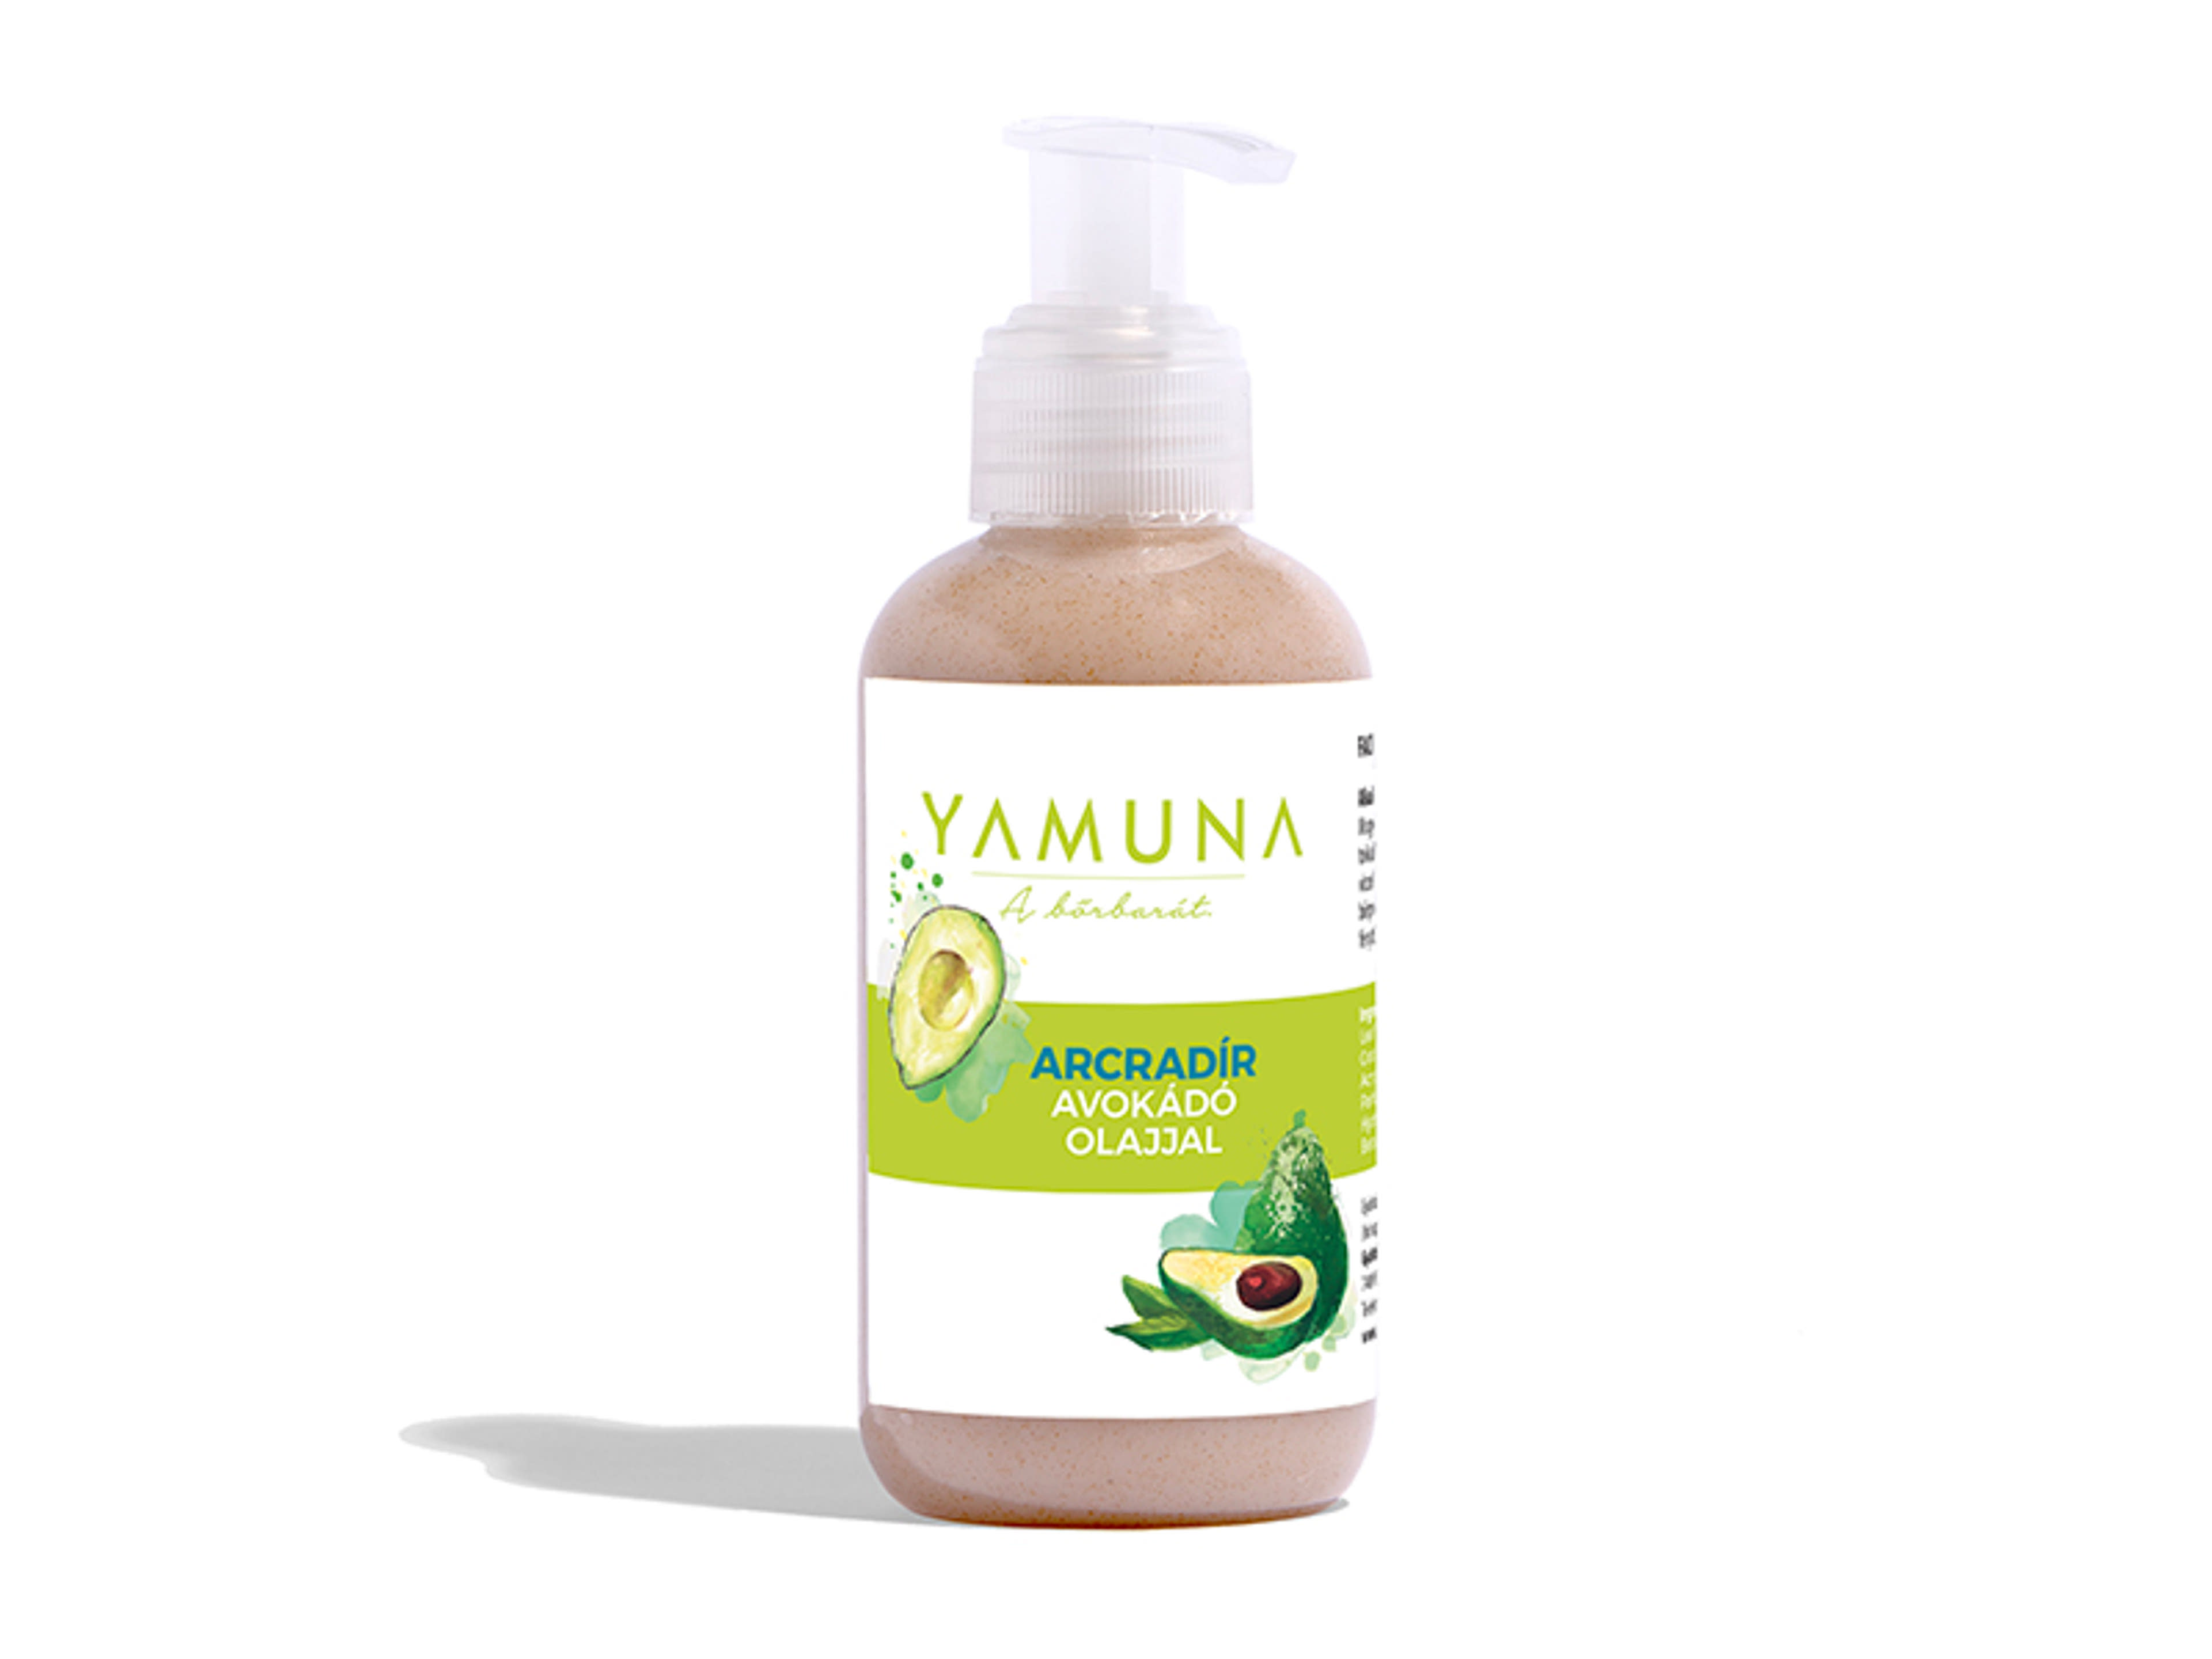 Yamuna arcradír avokádó olajjal - 150 ml